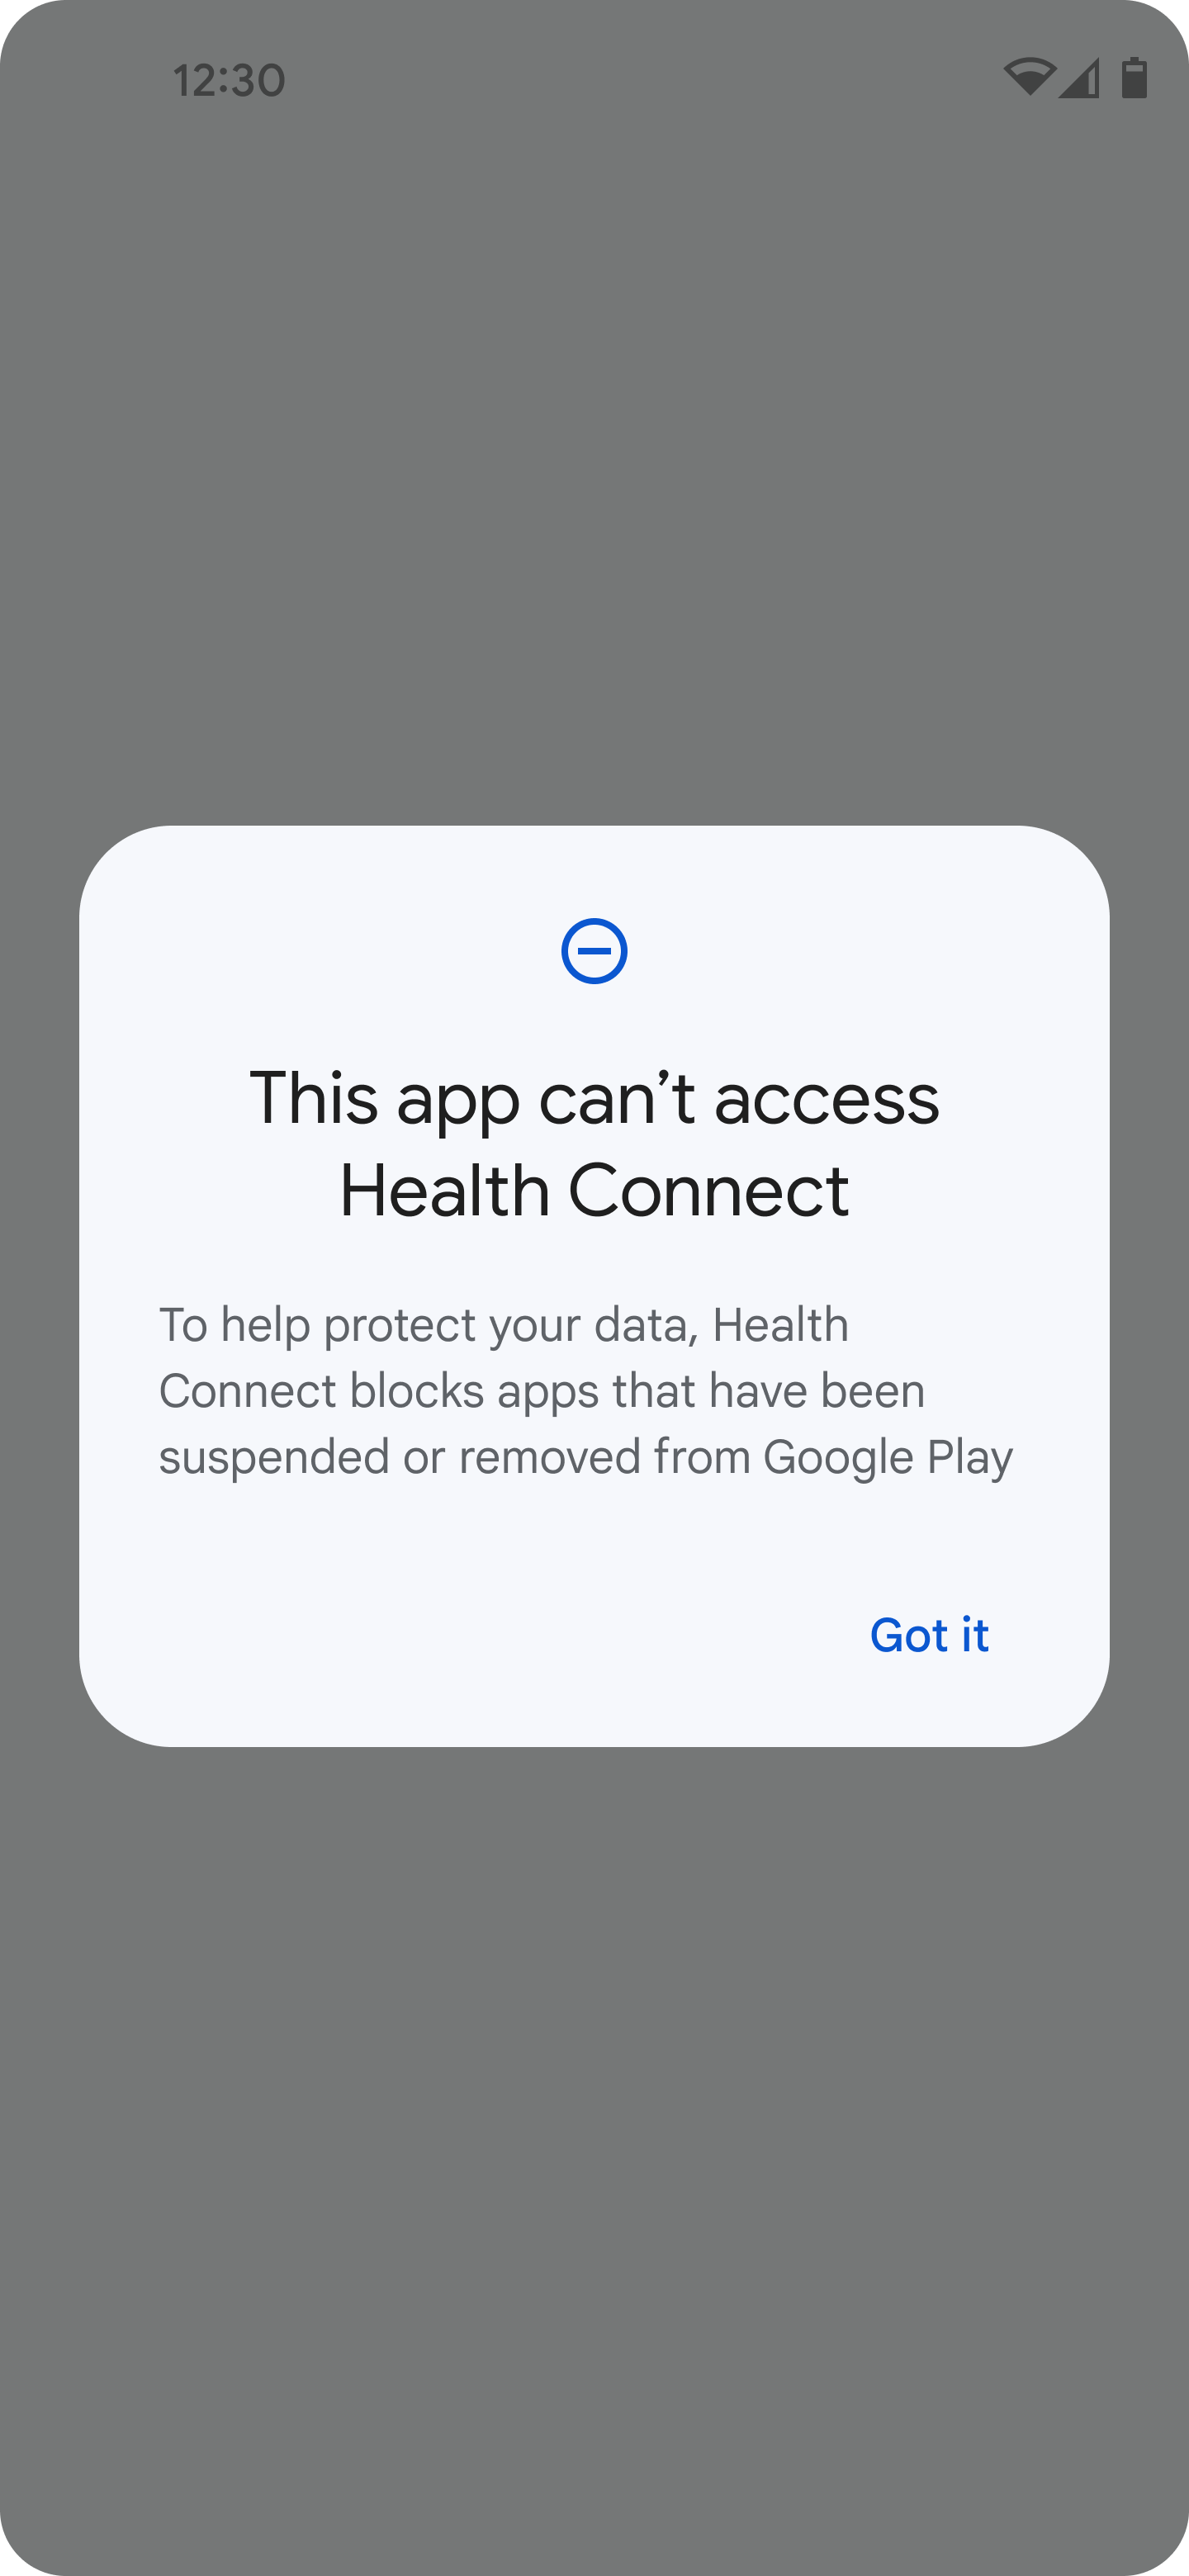 La app no tiene acceso suficiente a Health Connect